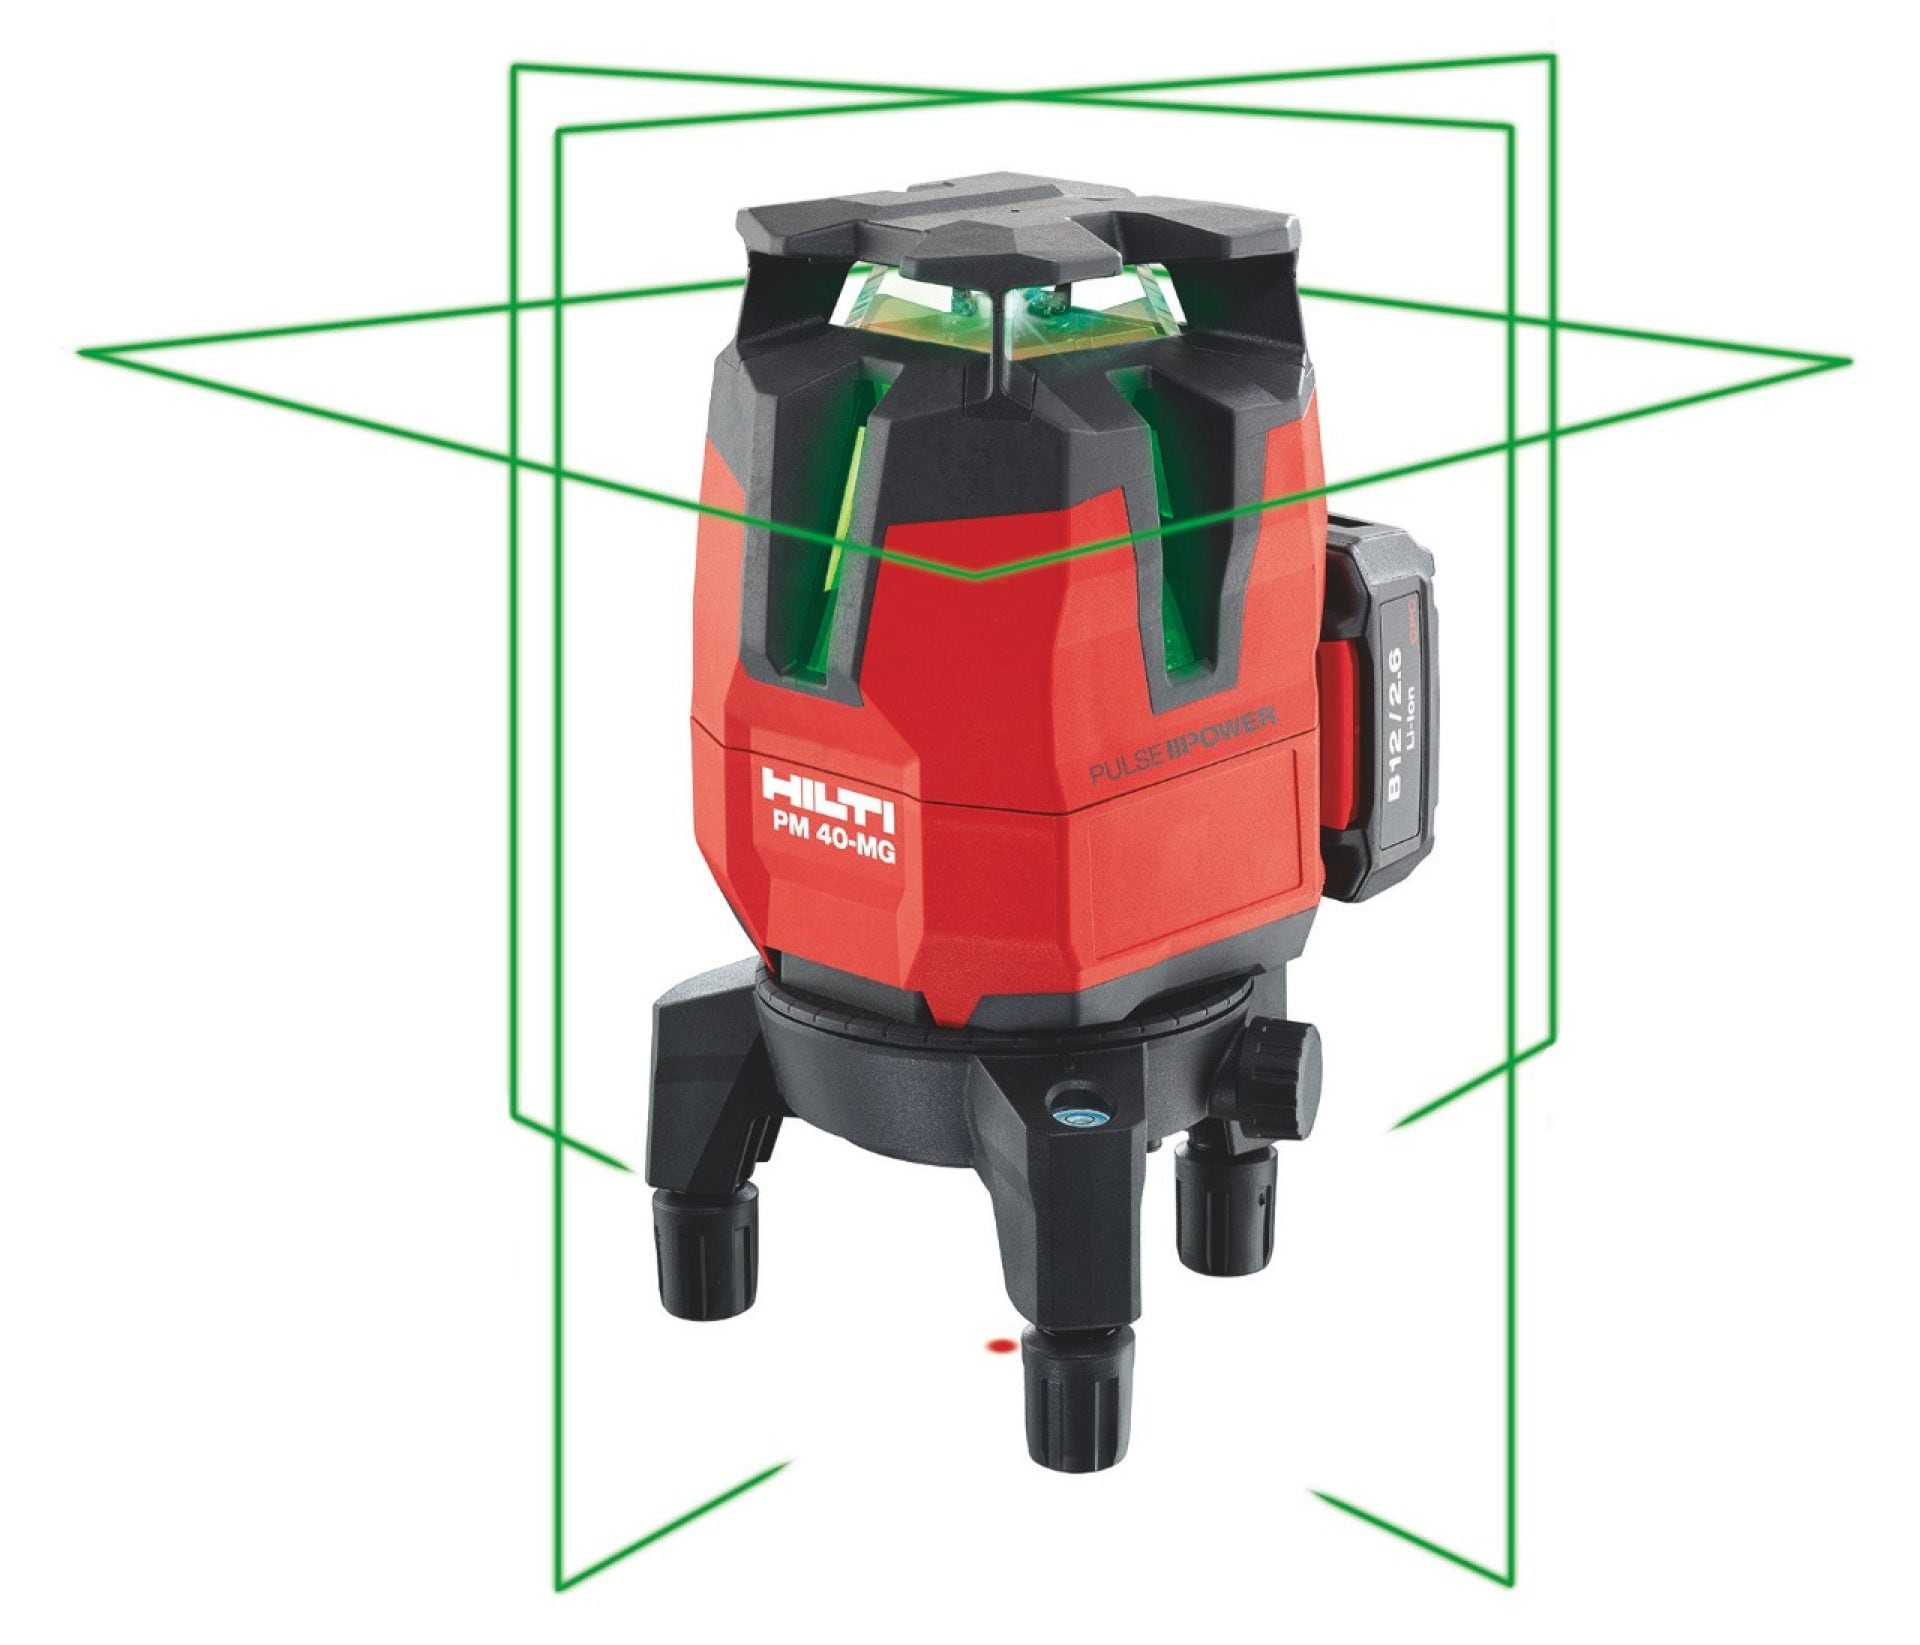 Laser multidirectionnel à faisceau vert Hilti PM 40-MG à quatre lignes verticales et une ligne 360°